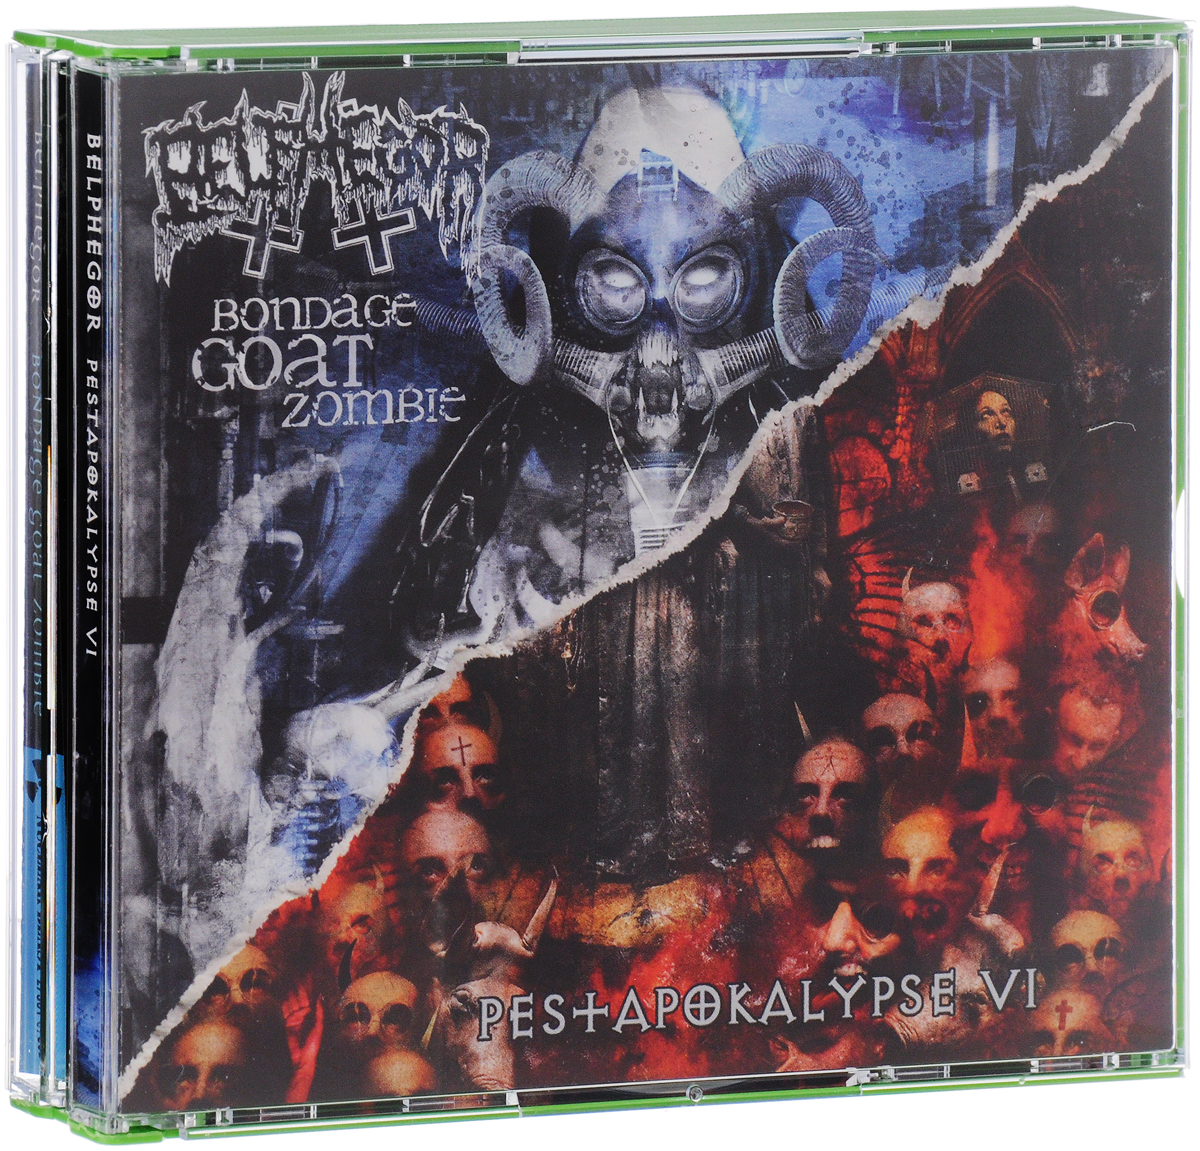 Belphegor. Pestapokalypse VI / Bondage Goat Zombie (2 CD)